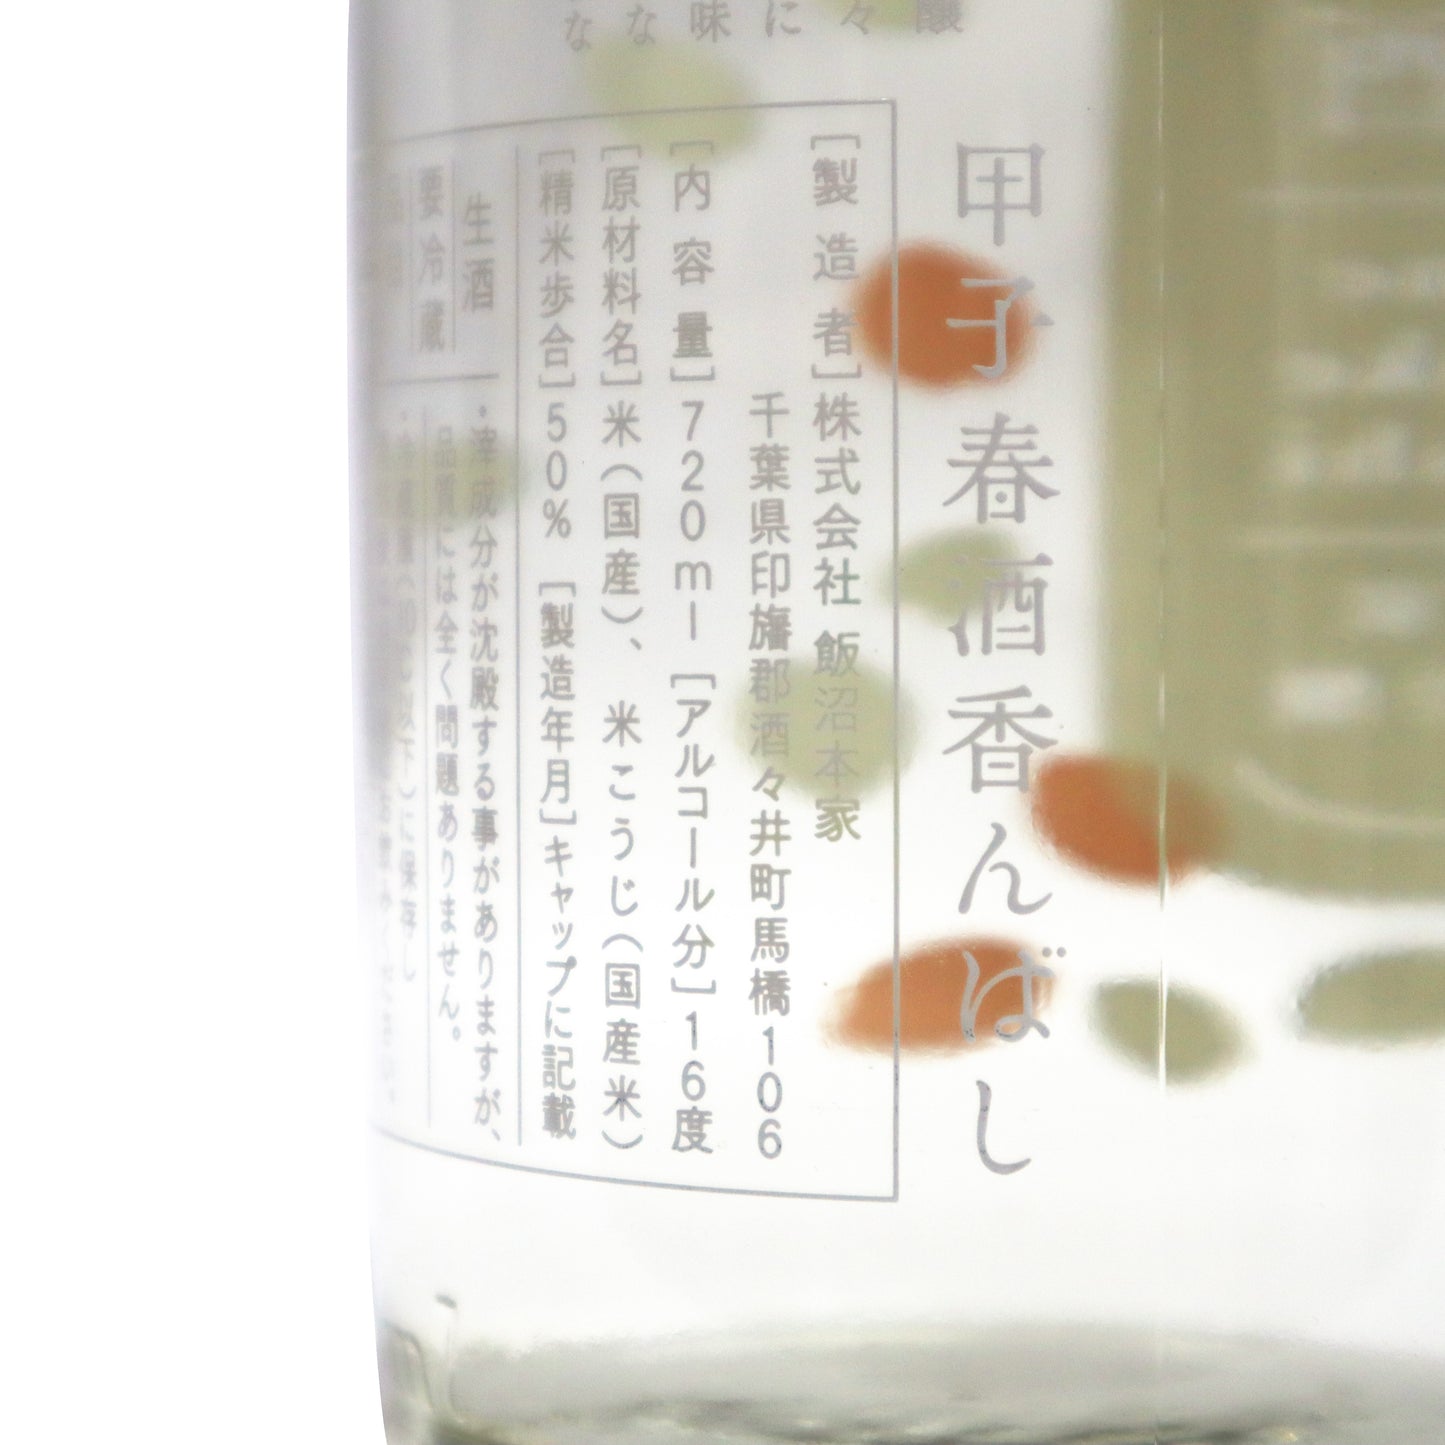 【甲子】春酒 香んばし 純米大吟醸 720ml/飯沼本家